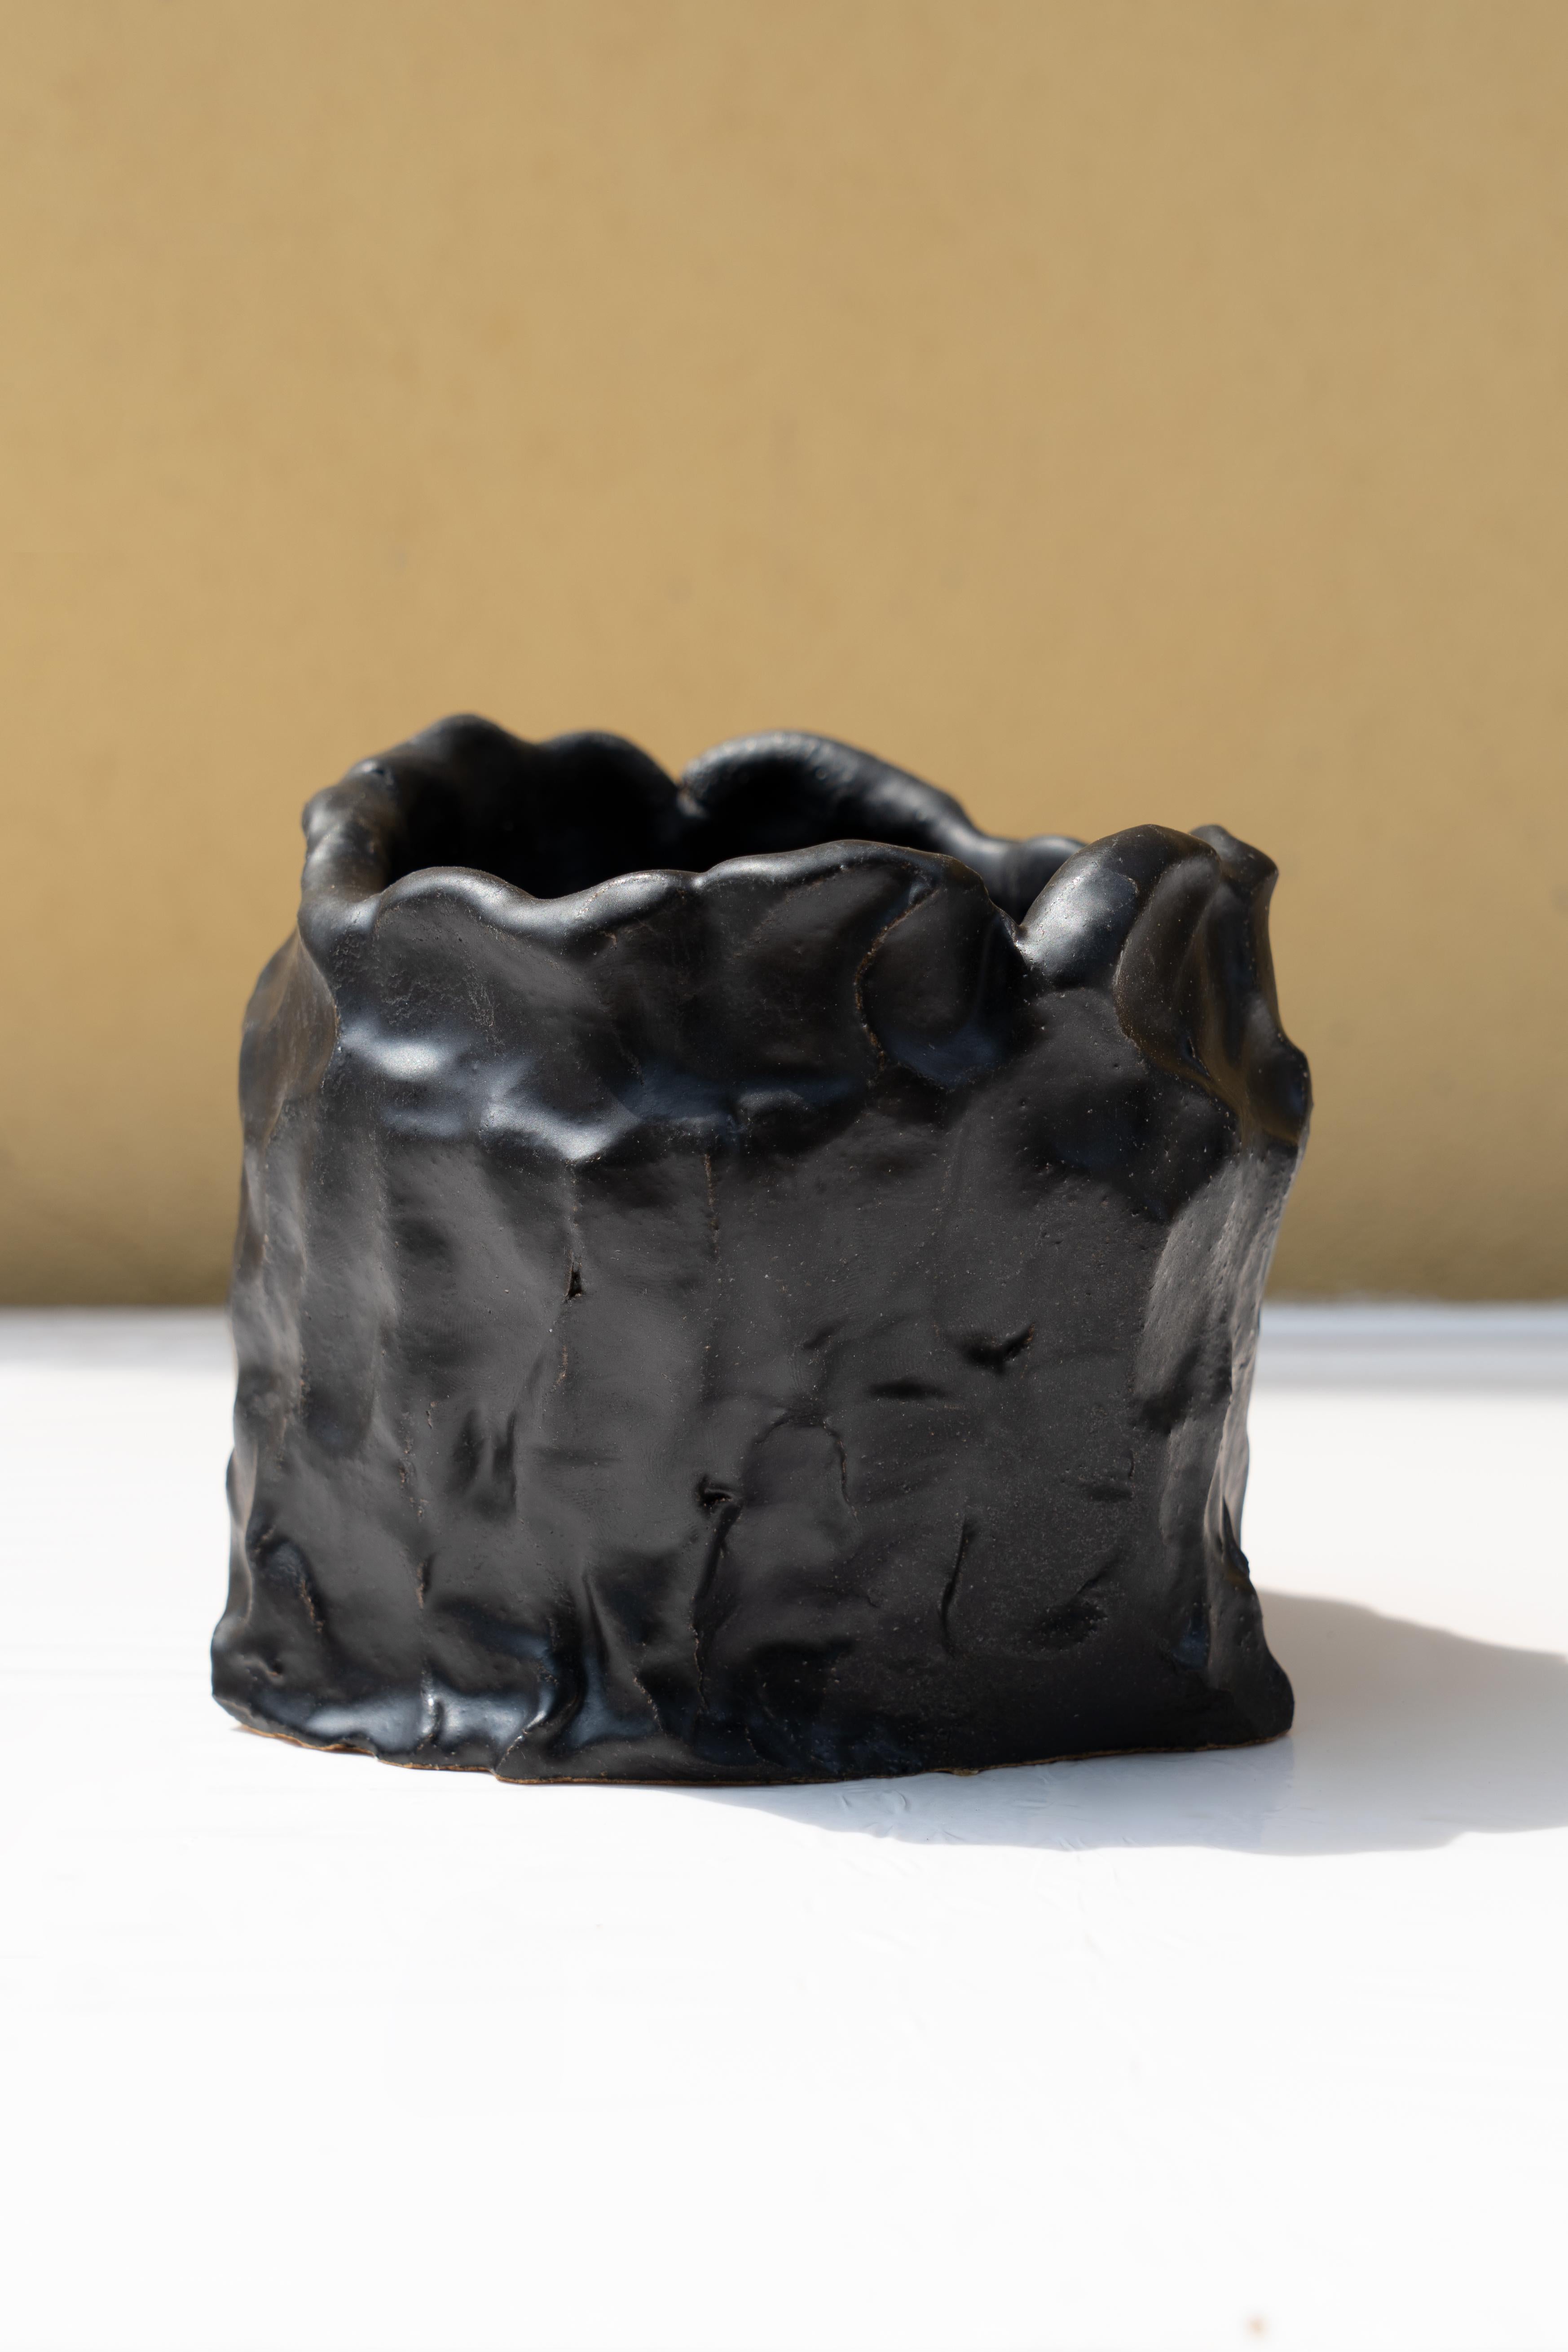 Vase noir mat de Daniele Giannetti
Dimensions : Ø 17 x H 15 cm.
Matériaux : Terre cuite émaillée. 

Toutes les pièces sont réalisées en terre cuite de Montelupo, cuites une seule fois, puis colorées par Daniele Giannetti avec une base acrylique